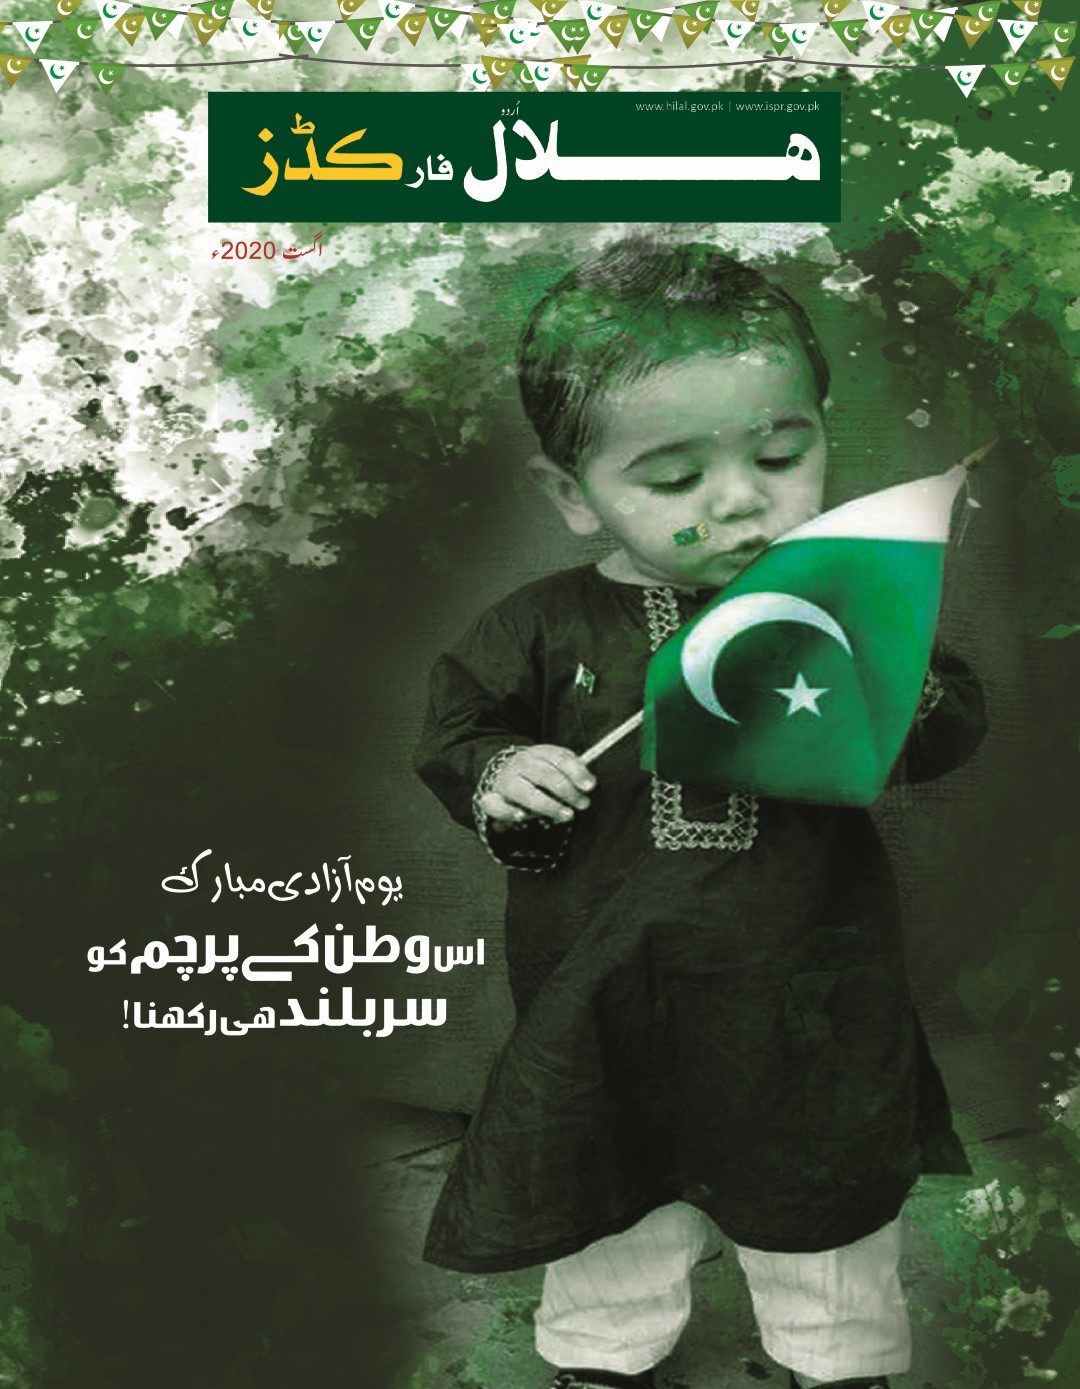 Hilal Urdu Aug 2020